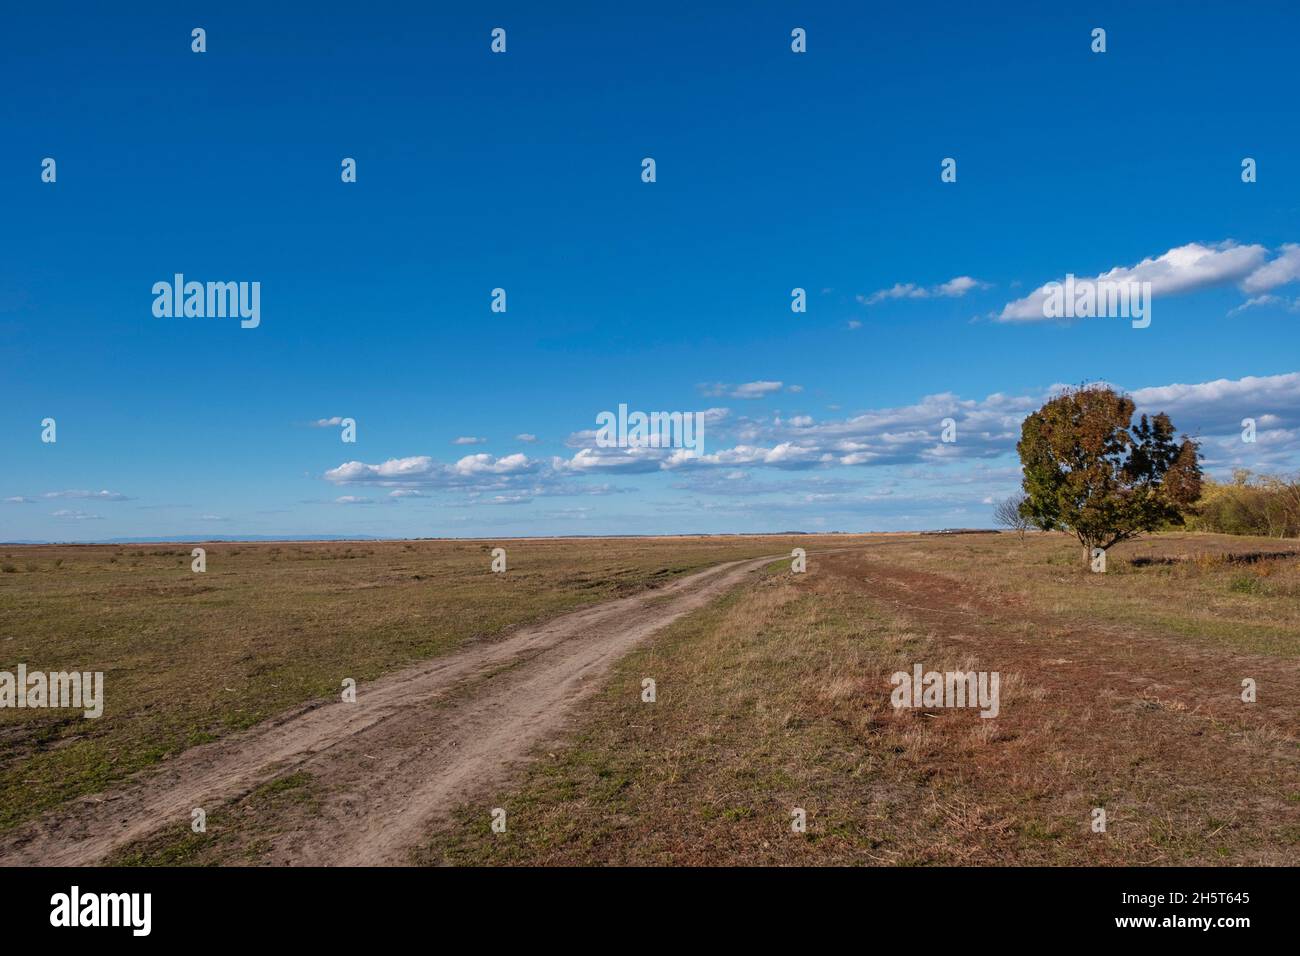 A lonely tree near a pathway in the puszta, Hortobágy  National Park, Hungary Stock Photo